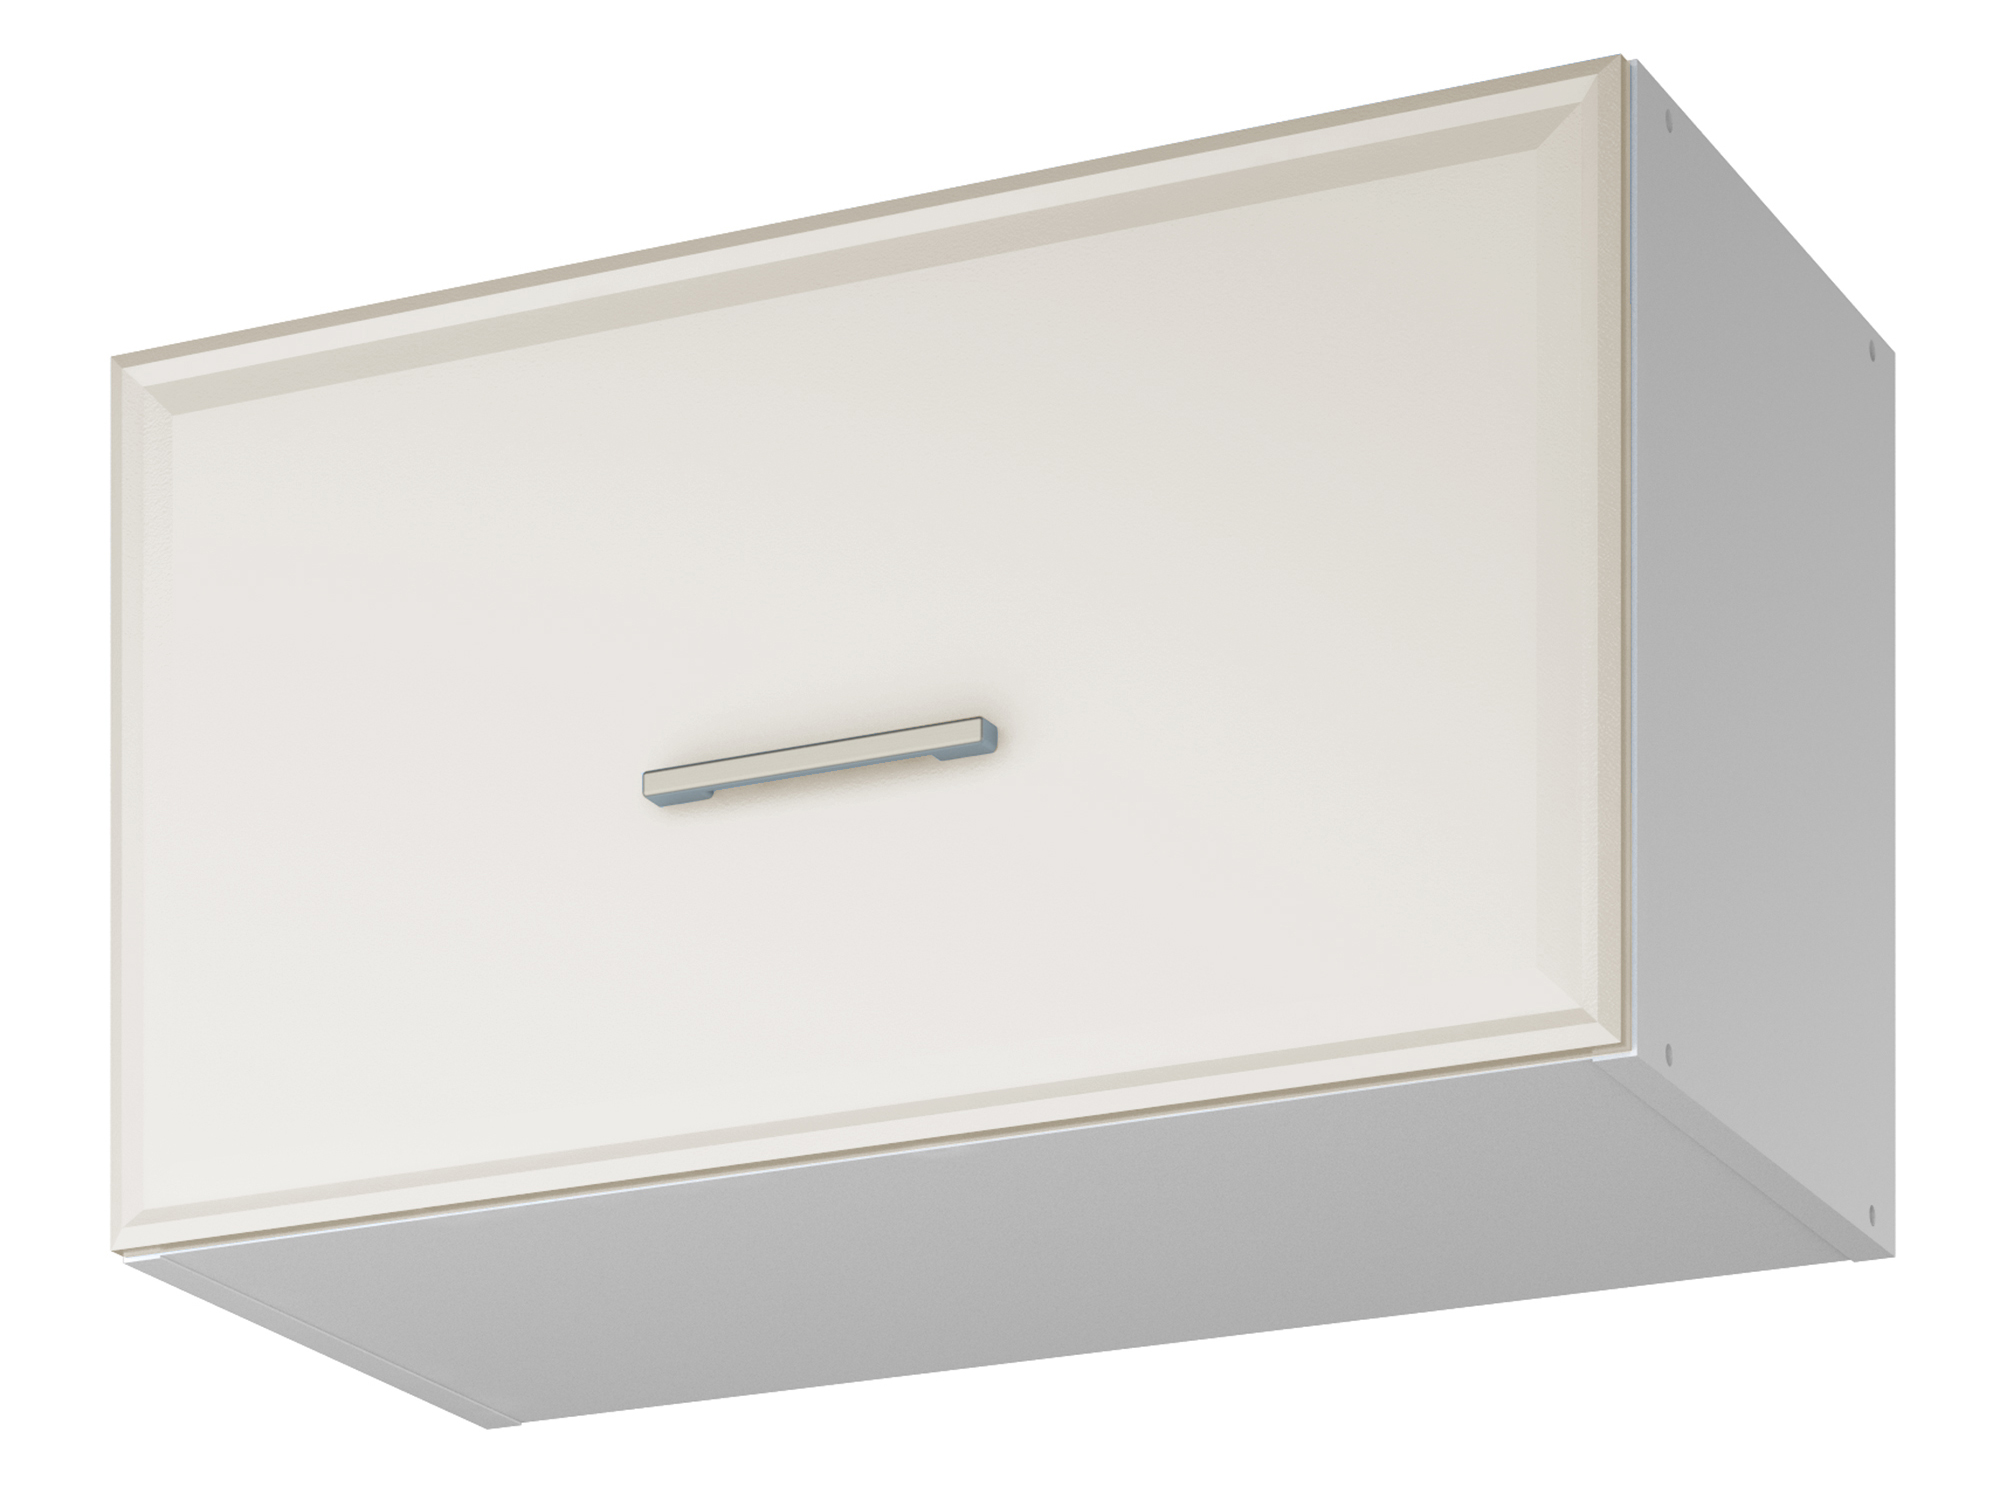 Шкаф навесной для вытяжки Greta 60 см Светлый, , Белый, МДФ, ЛДСП шкаф навесной greta 40 см светлый белый мдф лдсп